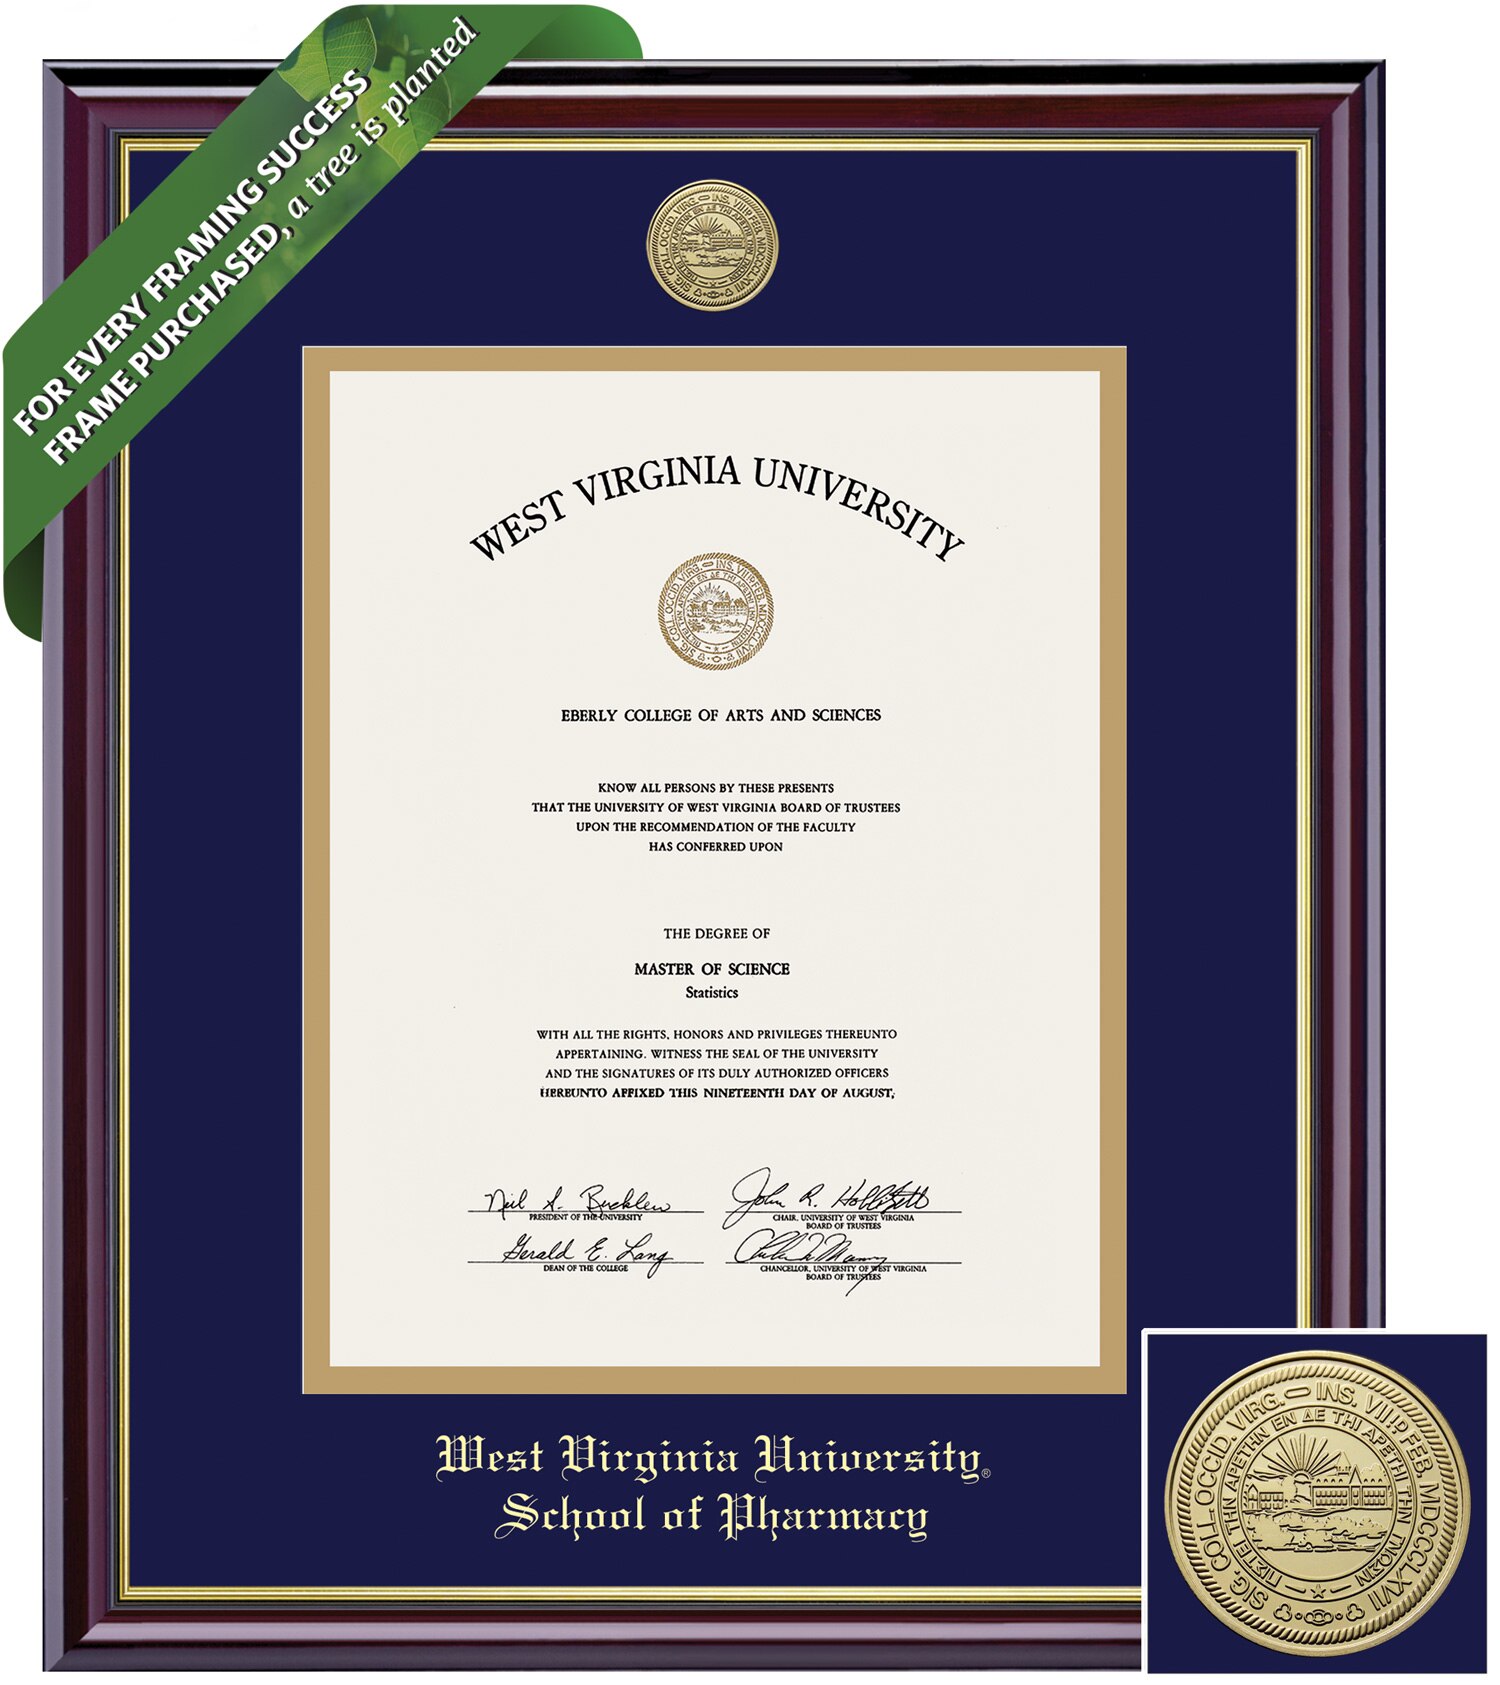 Framing Success 14 x 11 Windsor Gold Medallion Pharmacy Diploma Frame